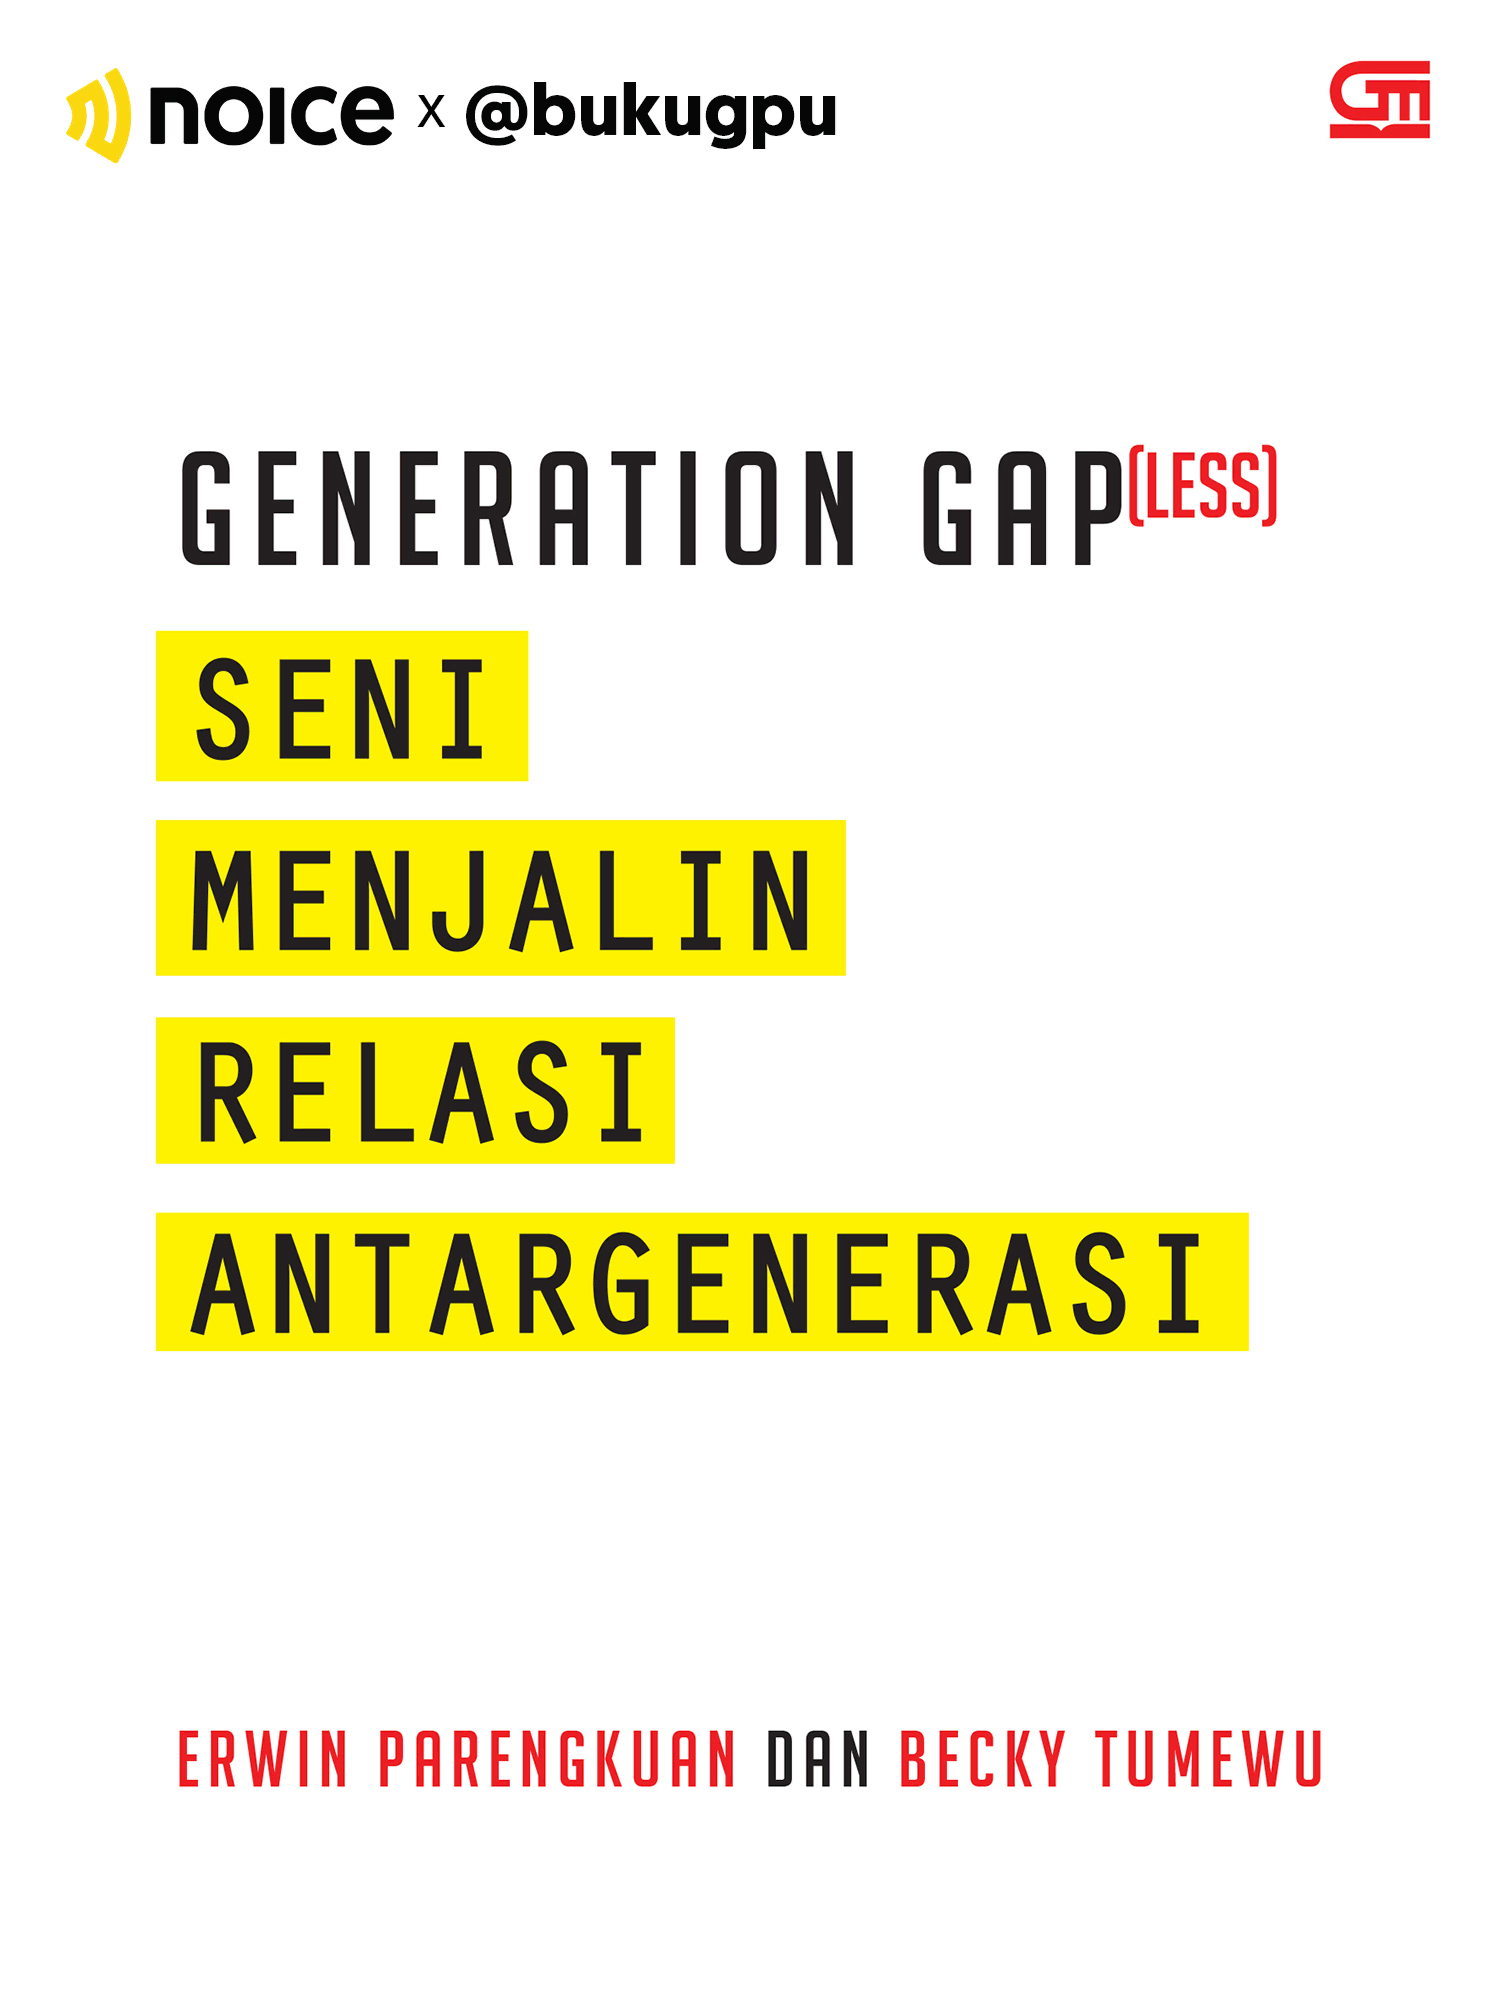 #4 Perang generasi itu nggak guna. Kita harus berkolaborasi dan mengatur strategi untuk berkomunikasi yang efektif antargenerasi. 